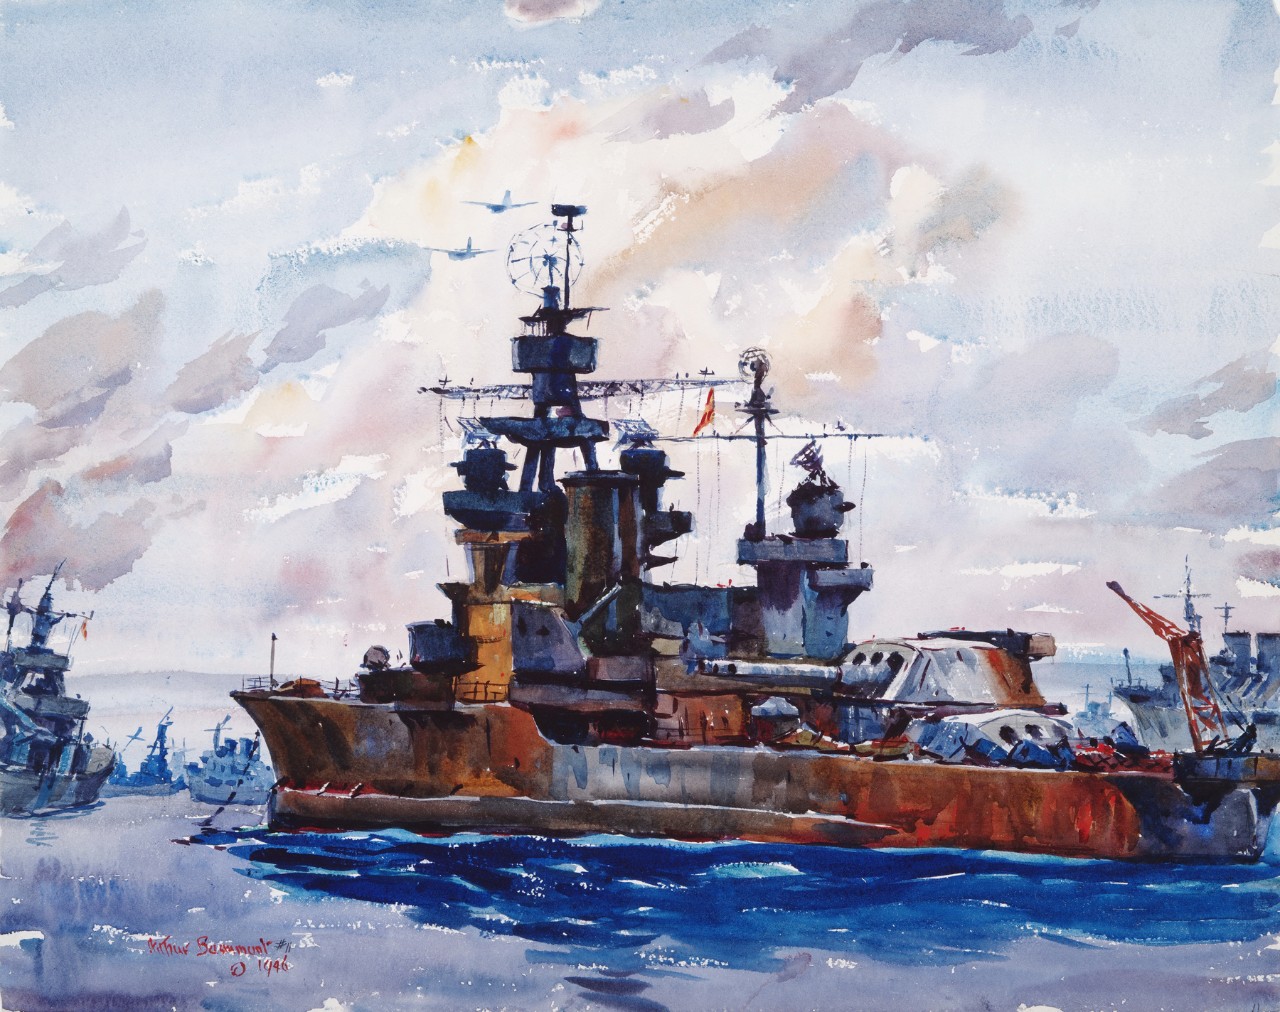 Battleship Pennsylvania after bomb test